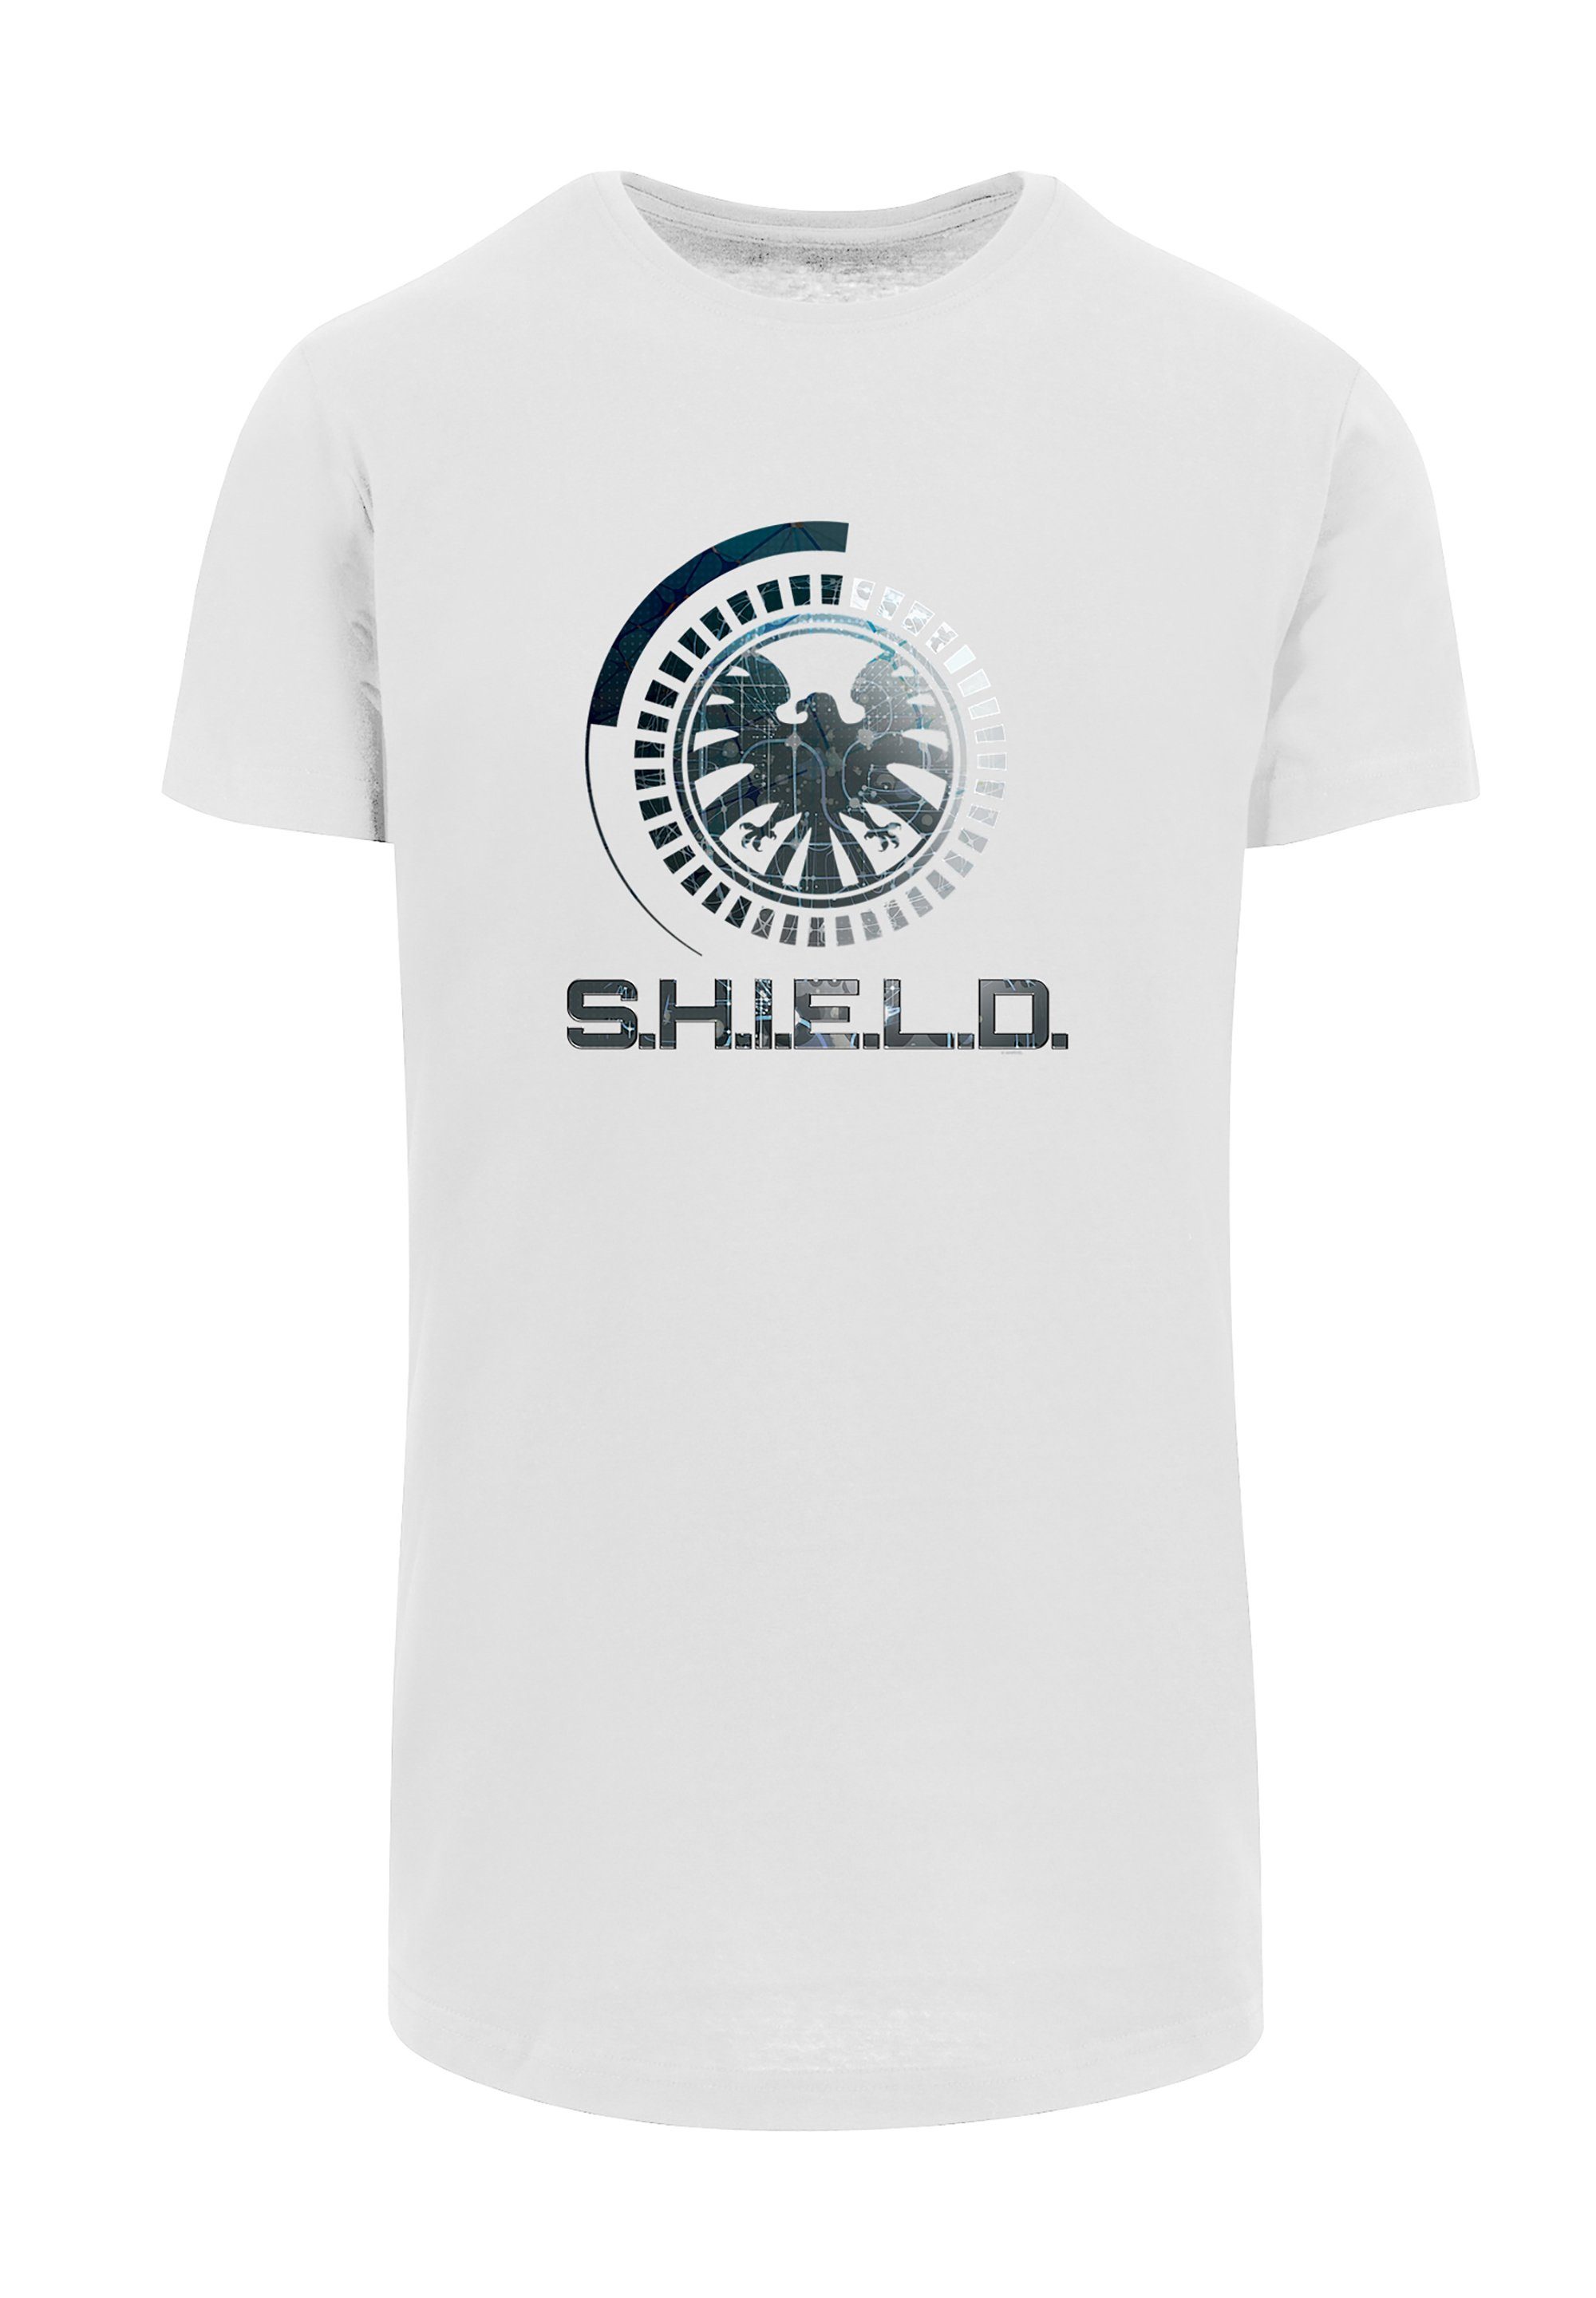 Shield Avengers Sehr Print, T-Shirt Marvel weicher hohem mit Baumwollstoff Tragekomfort F4NT4STIC Circuits